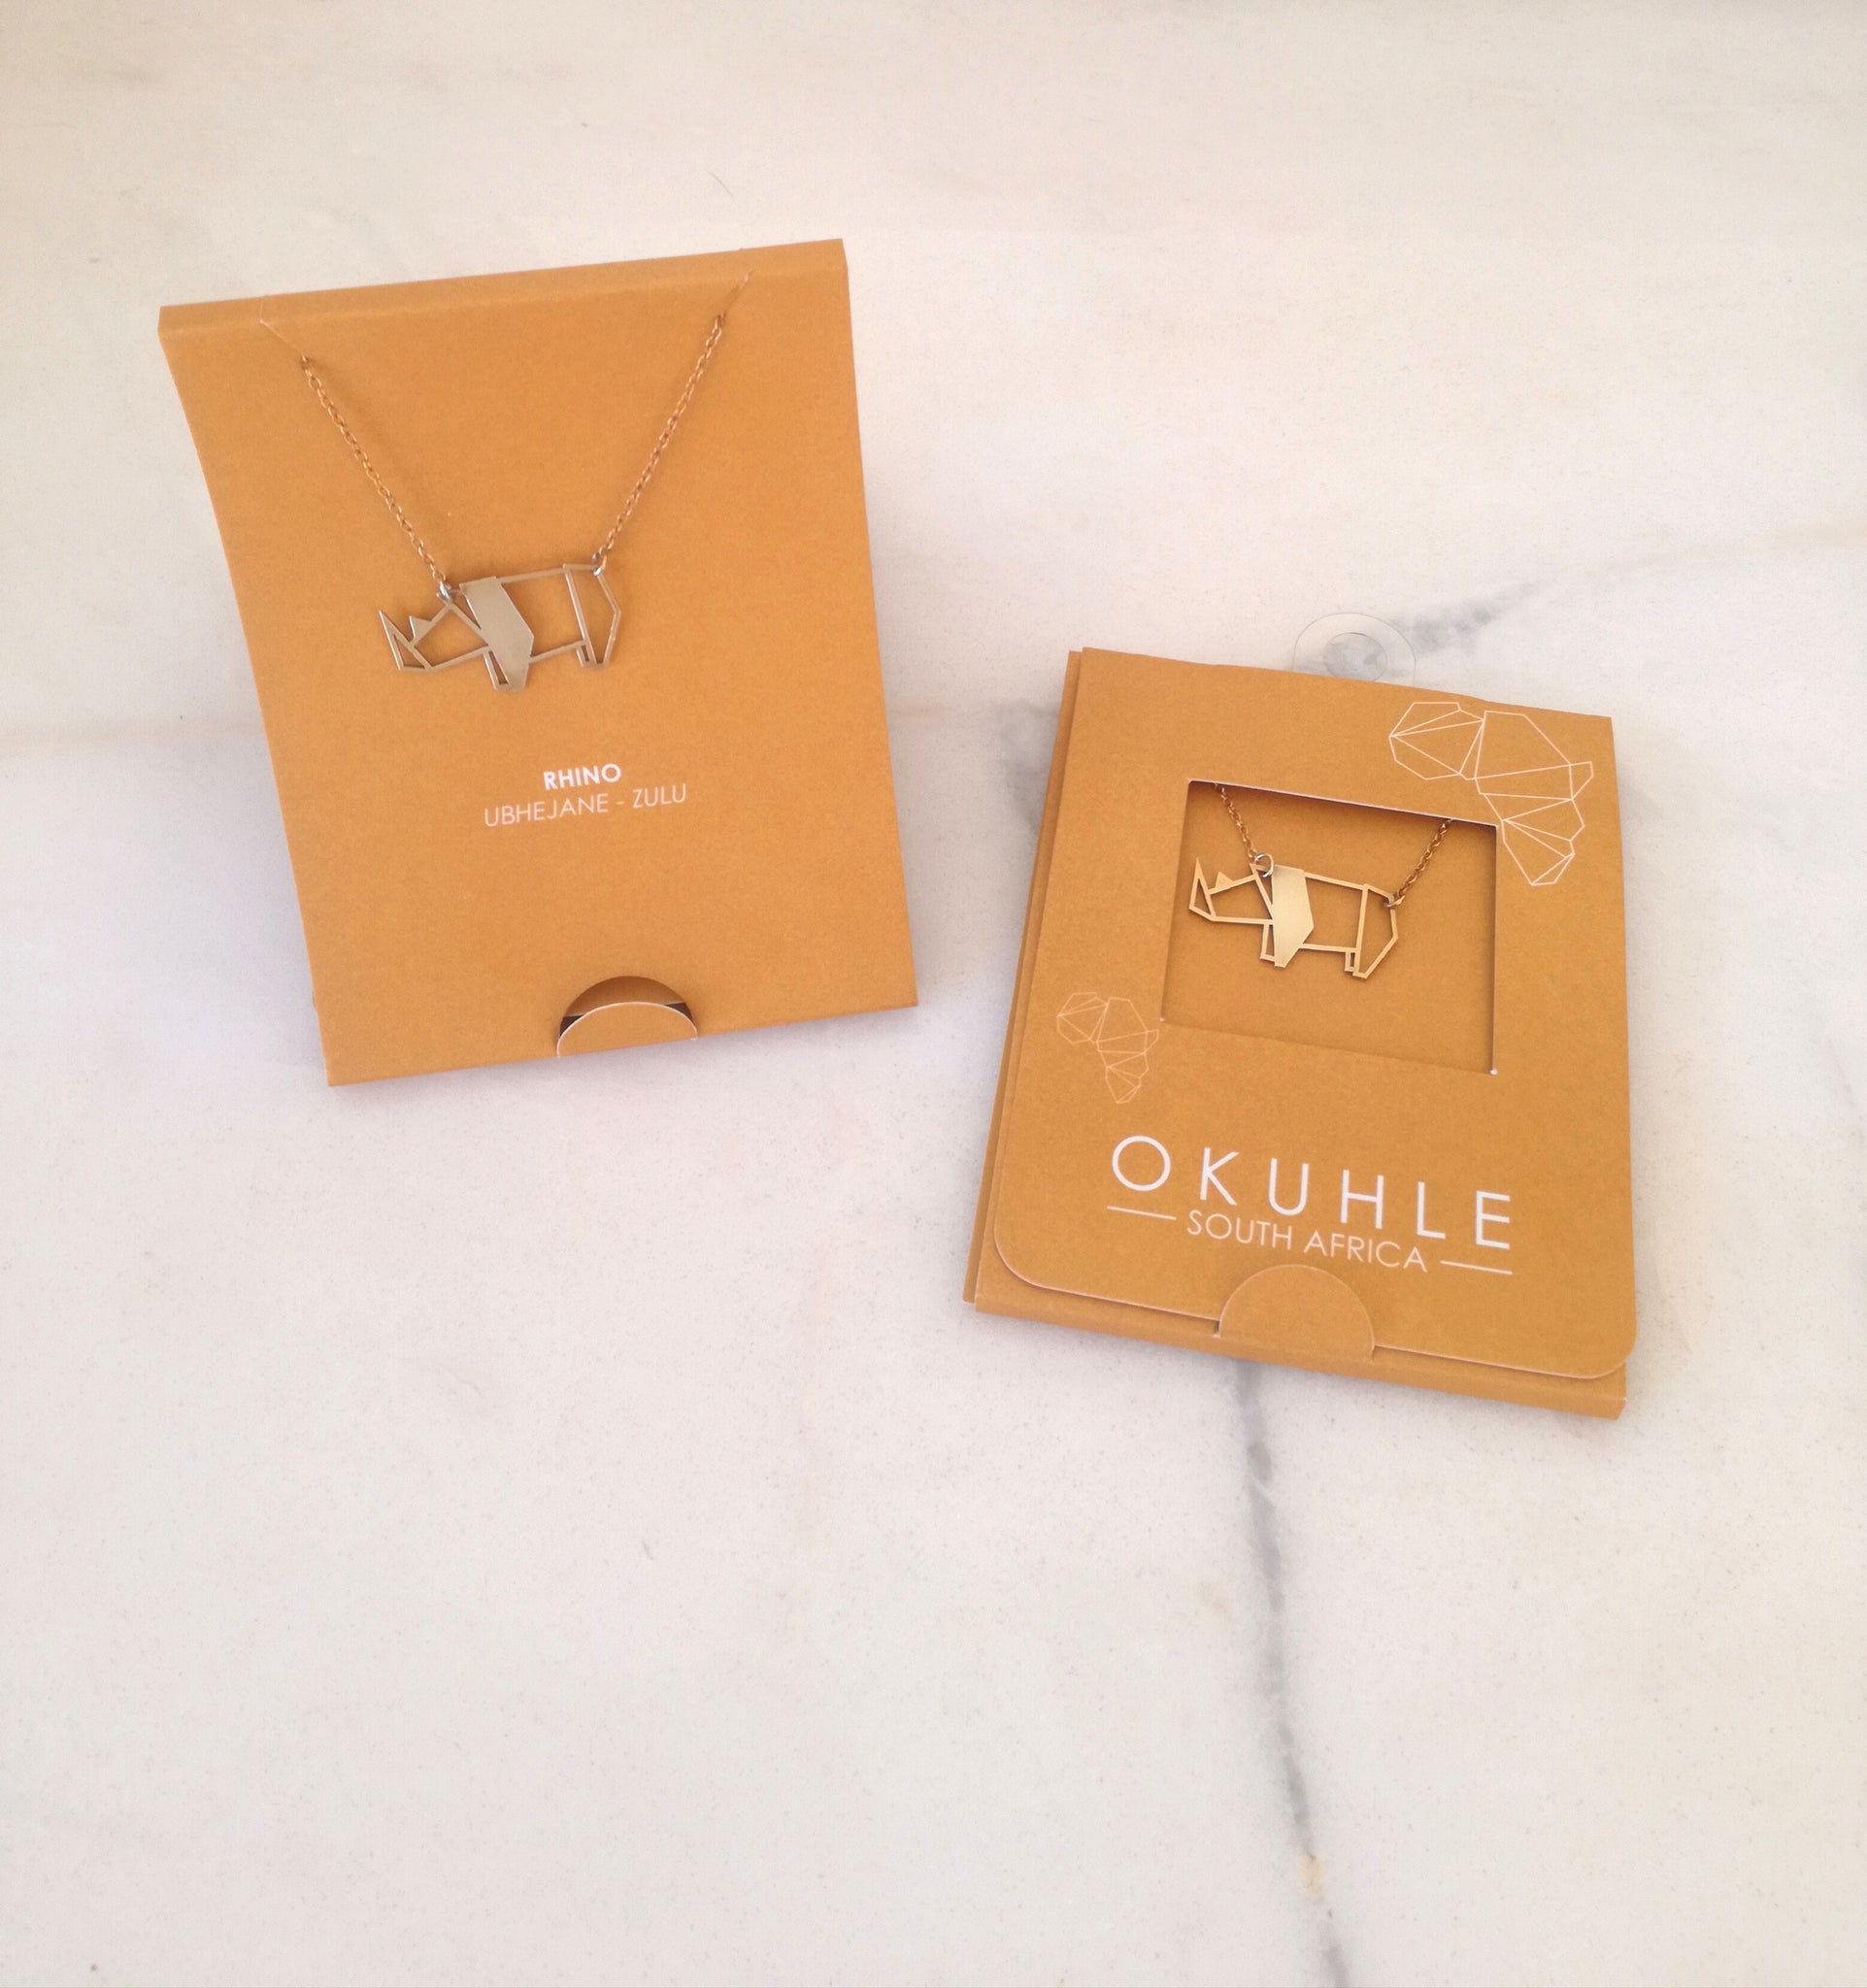 OKUHLE Rhino pendant & necklace - packaging